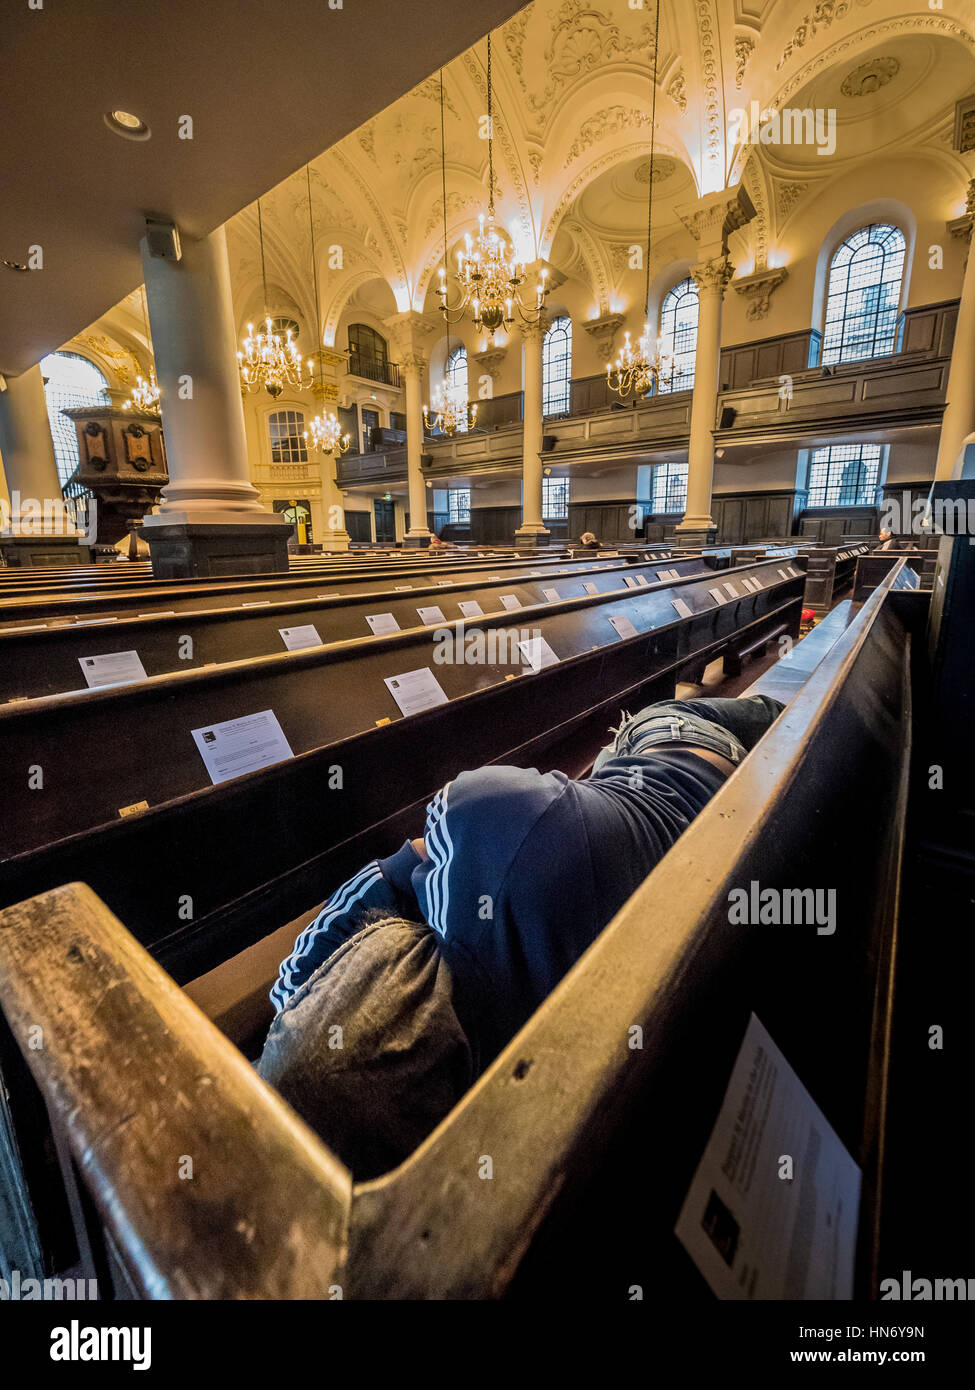 Obdachloser schlafen in Kirchenbänken der St. Martin-in-the-Fields, englische anglikanische Kirche an der Nordost-Ecke des Trafalgar Square in der Stadt Westm Stockfoto